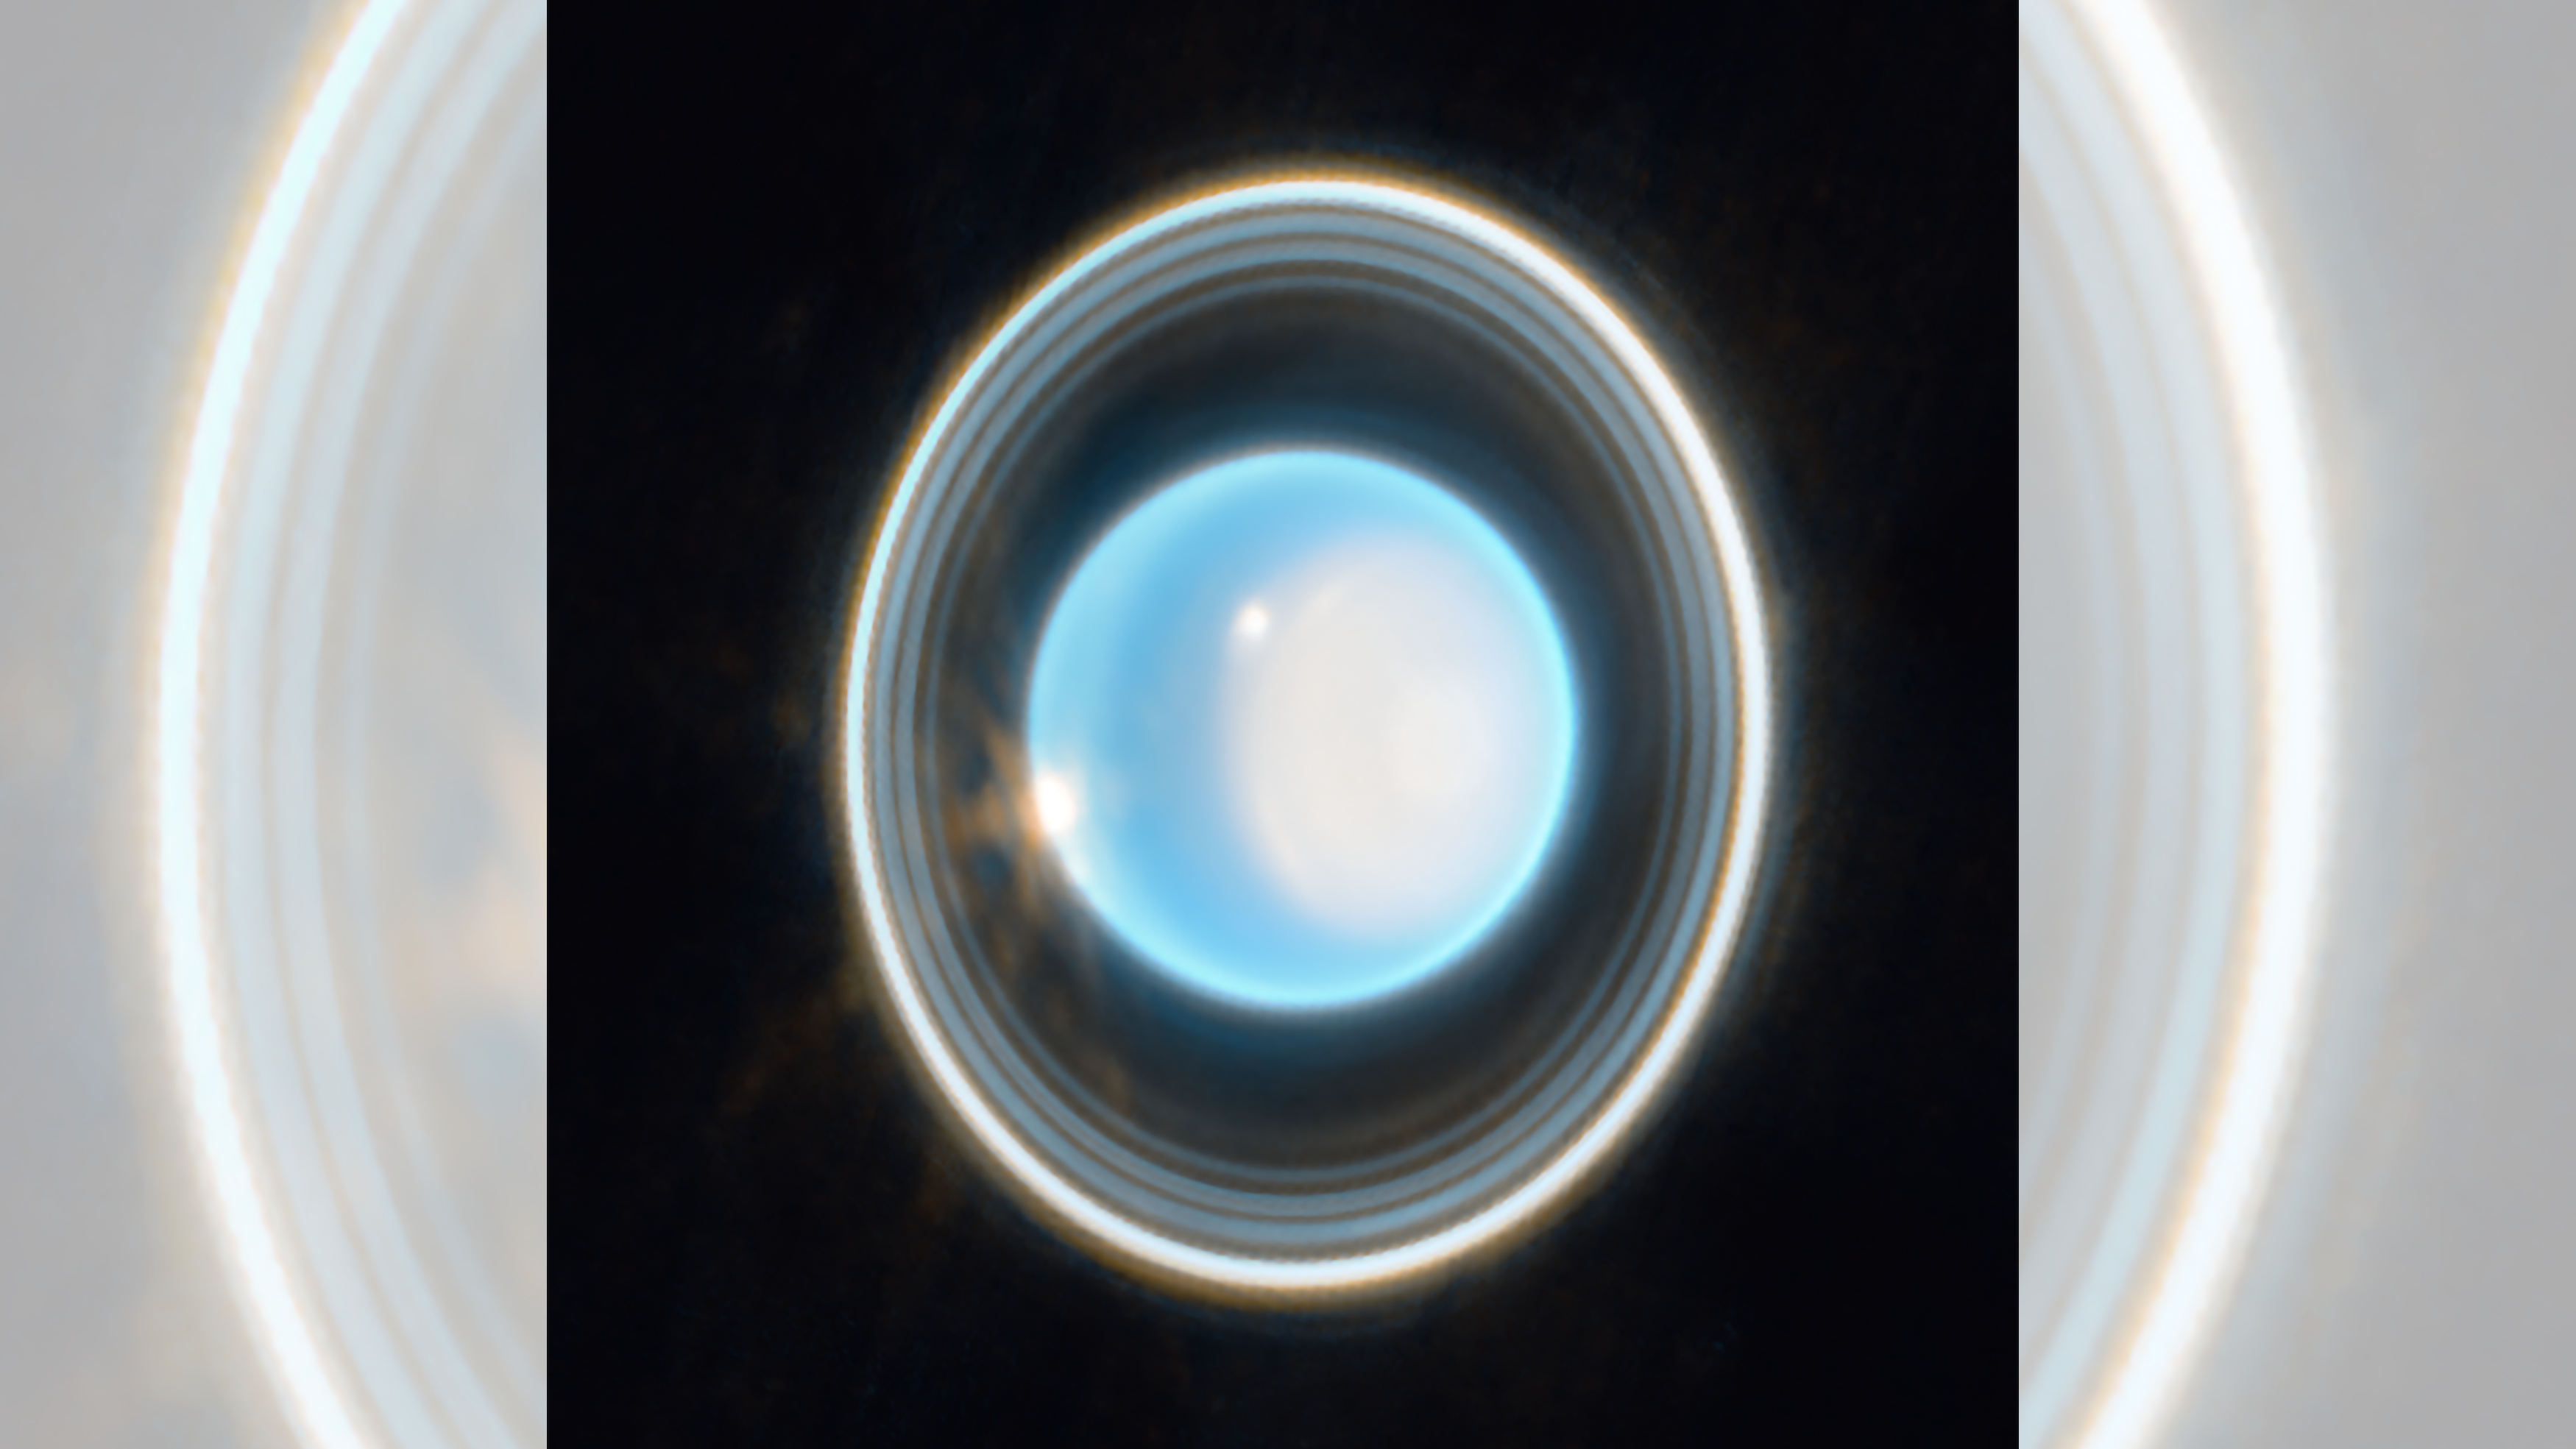 Уран, седьмая планета от Солнца, выглядит на этом снимке, полученном космическим телескопом Джеймса Уэбба, в виде блестящего синего шара, окруженного белыми кольцами.